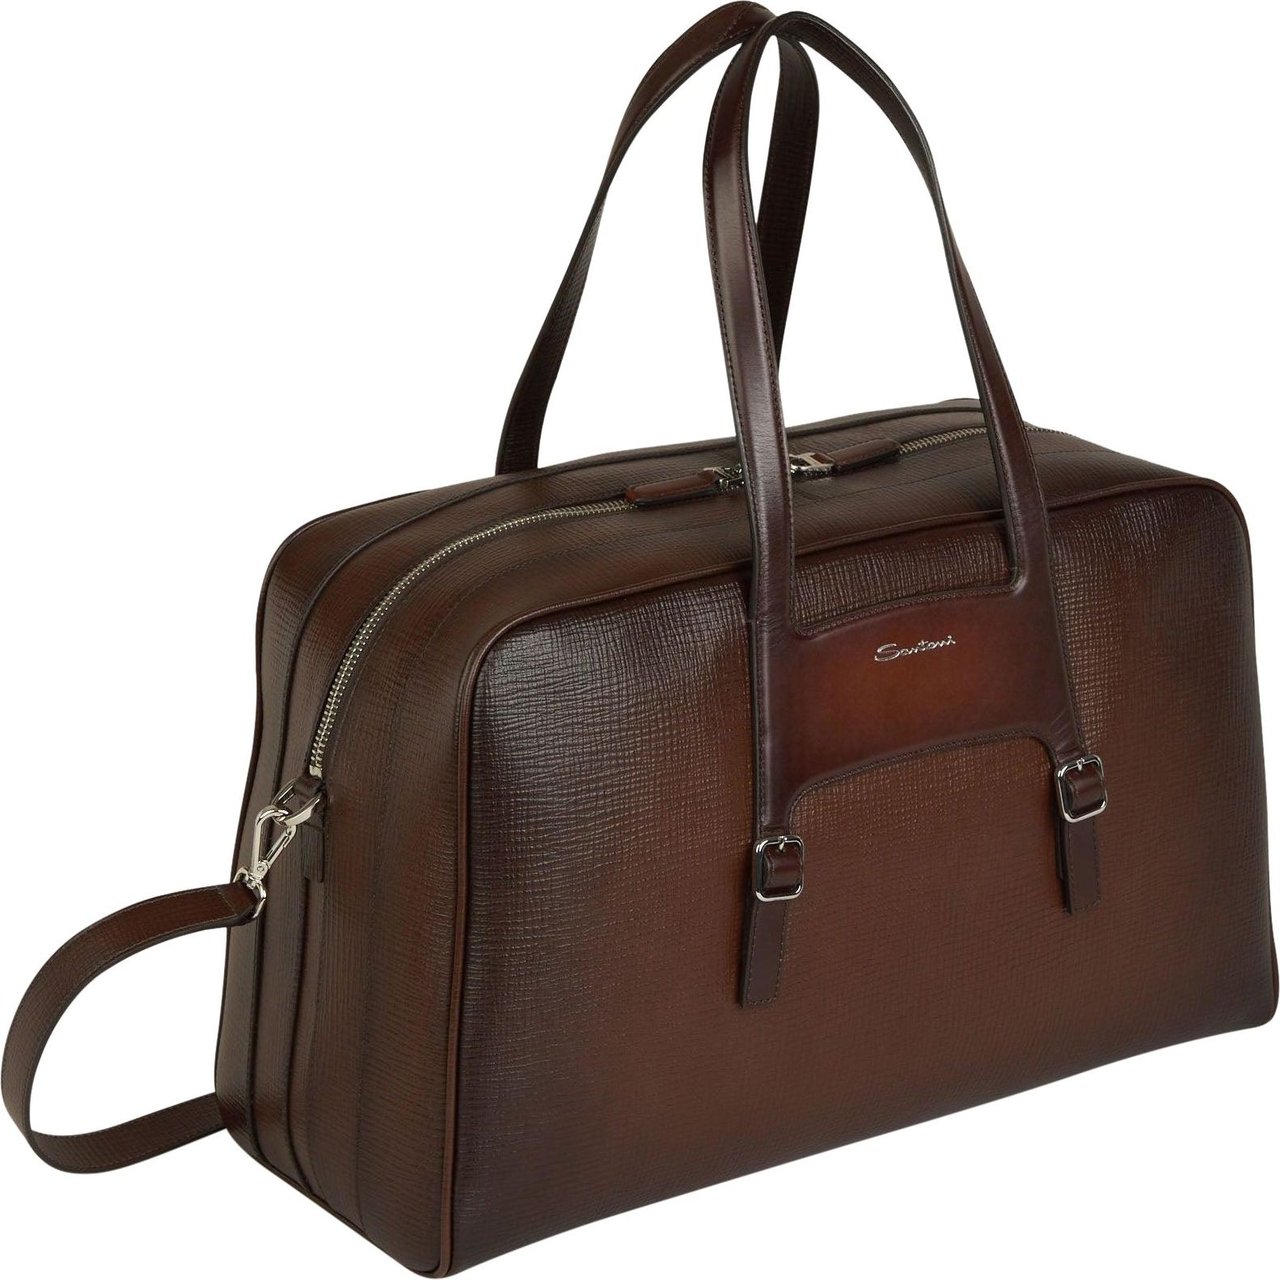 Santoni Leather Travel Bag Beige